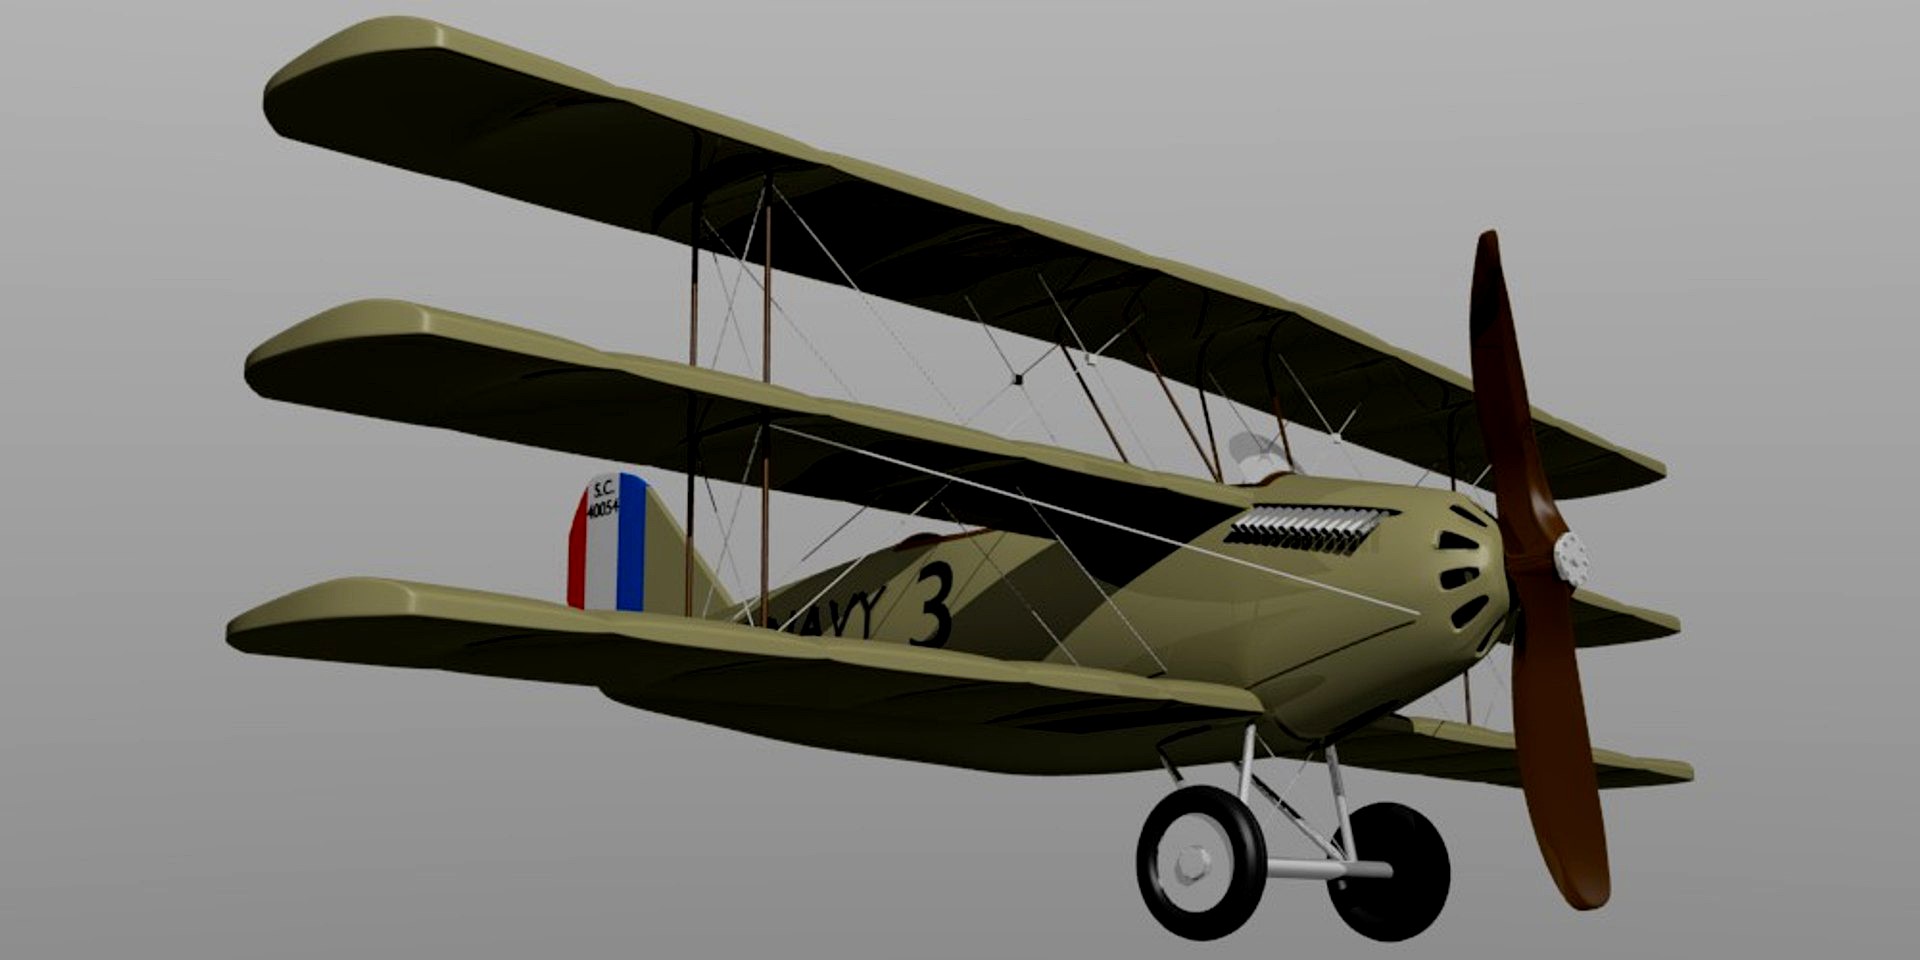 Curtiss 18-T